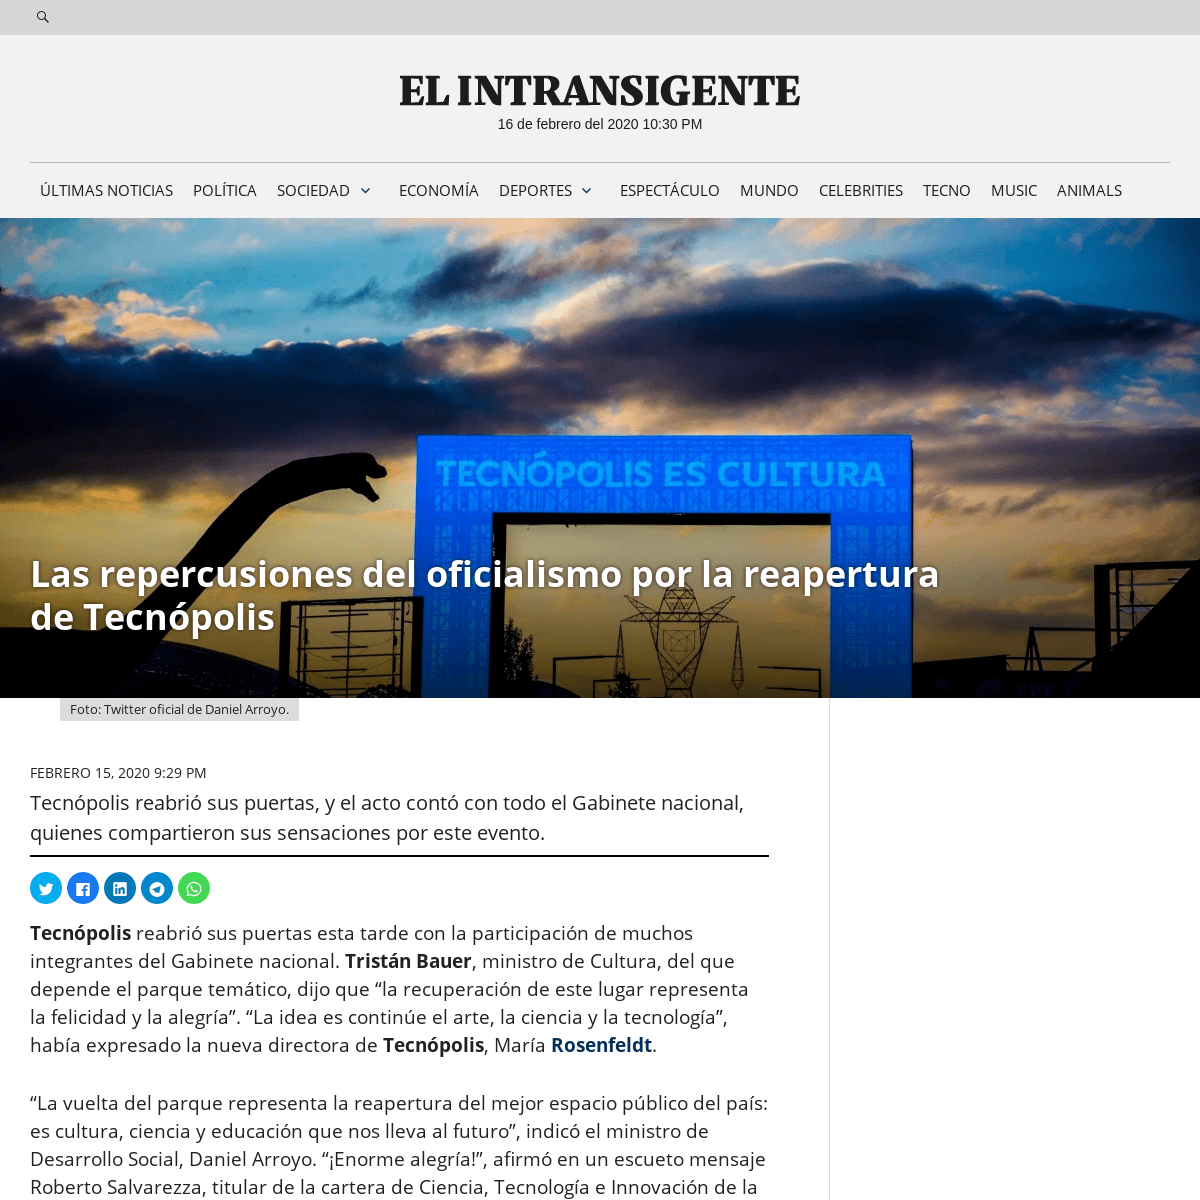 A complete backup of elintransigente.com/politica/2020/02/15/las-repercusiones-del-oficialismo-por-la-reapertura-de-tecnopolis/